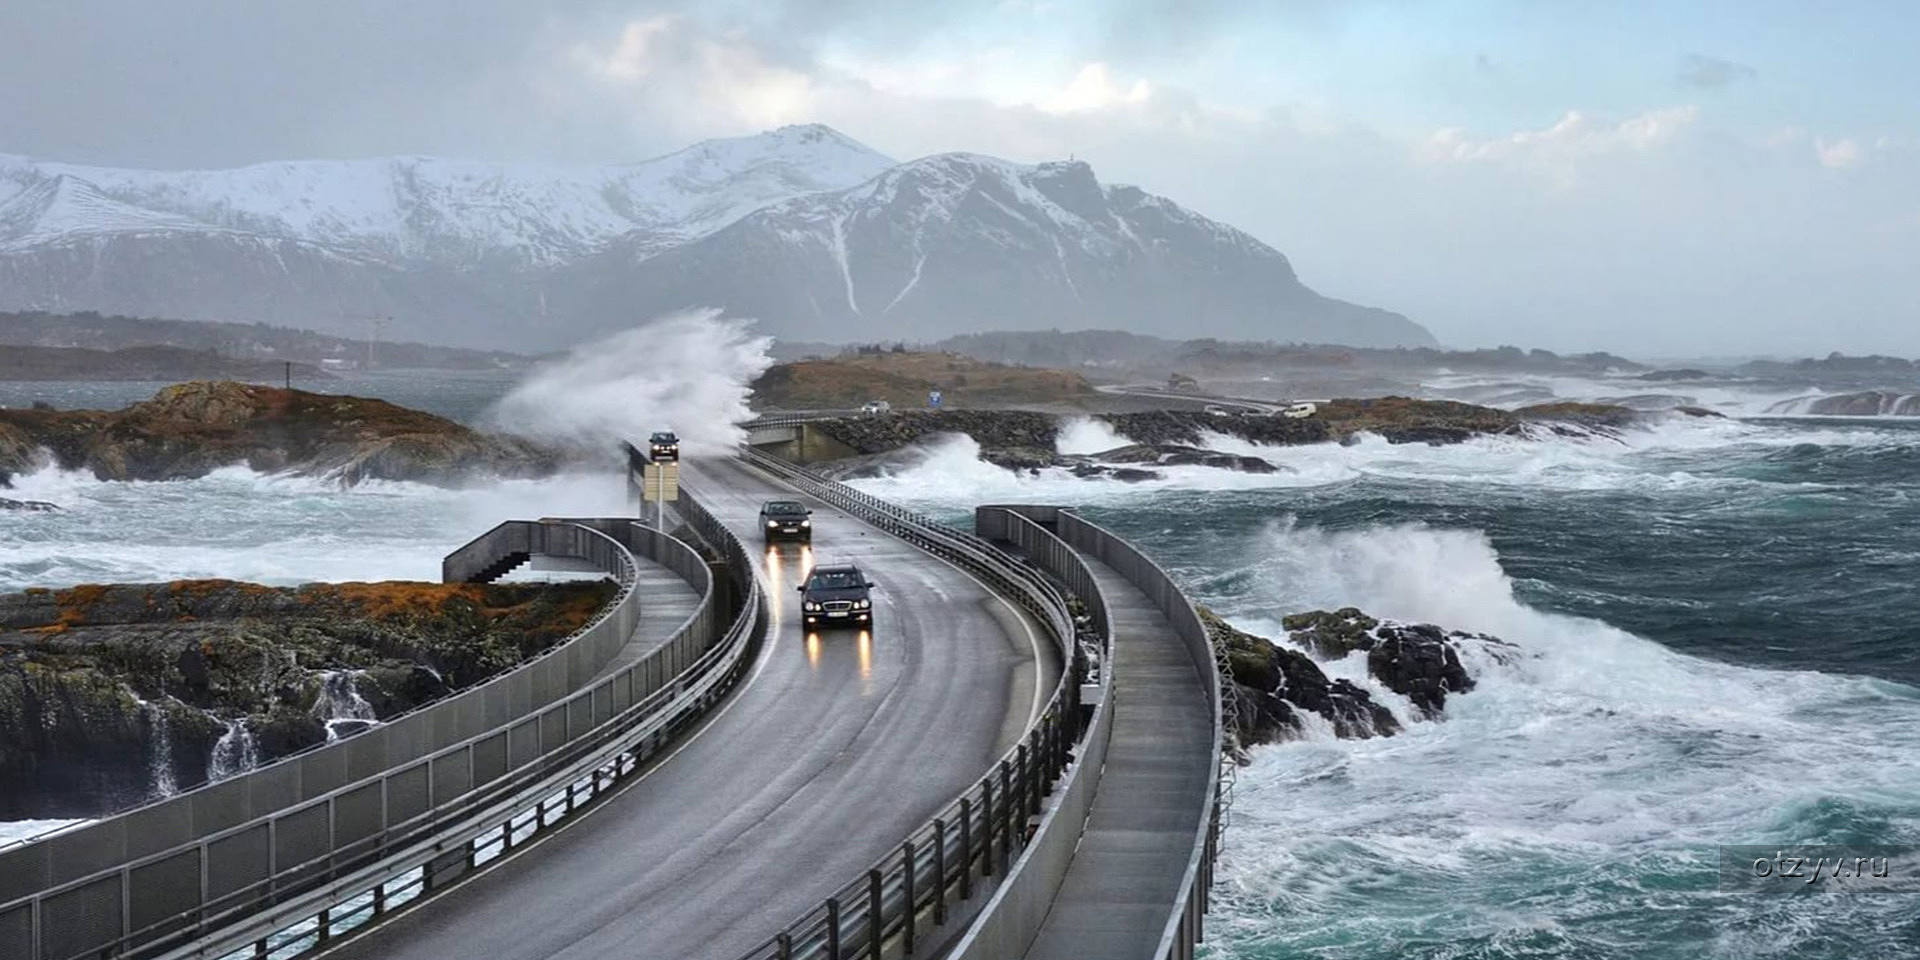 Атлантическая дорога. Атлантик роуд в Норвегии. Мост Атлантик роуд Норвегия. Атлантическая дорога, округ Ромсдал, Норвегия. Трансатлантическая дорога в Норвегии.